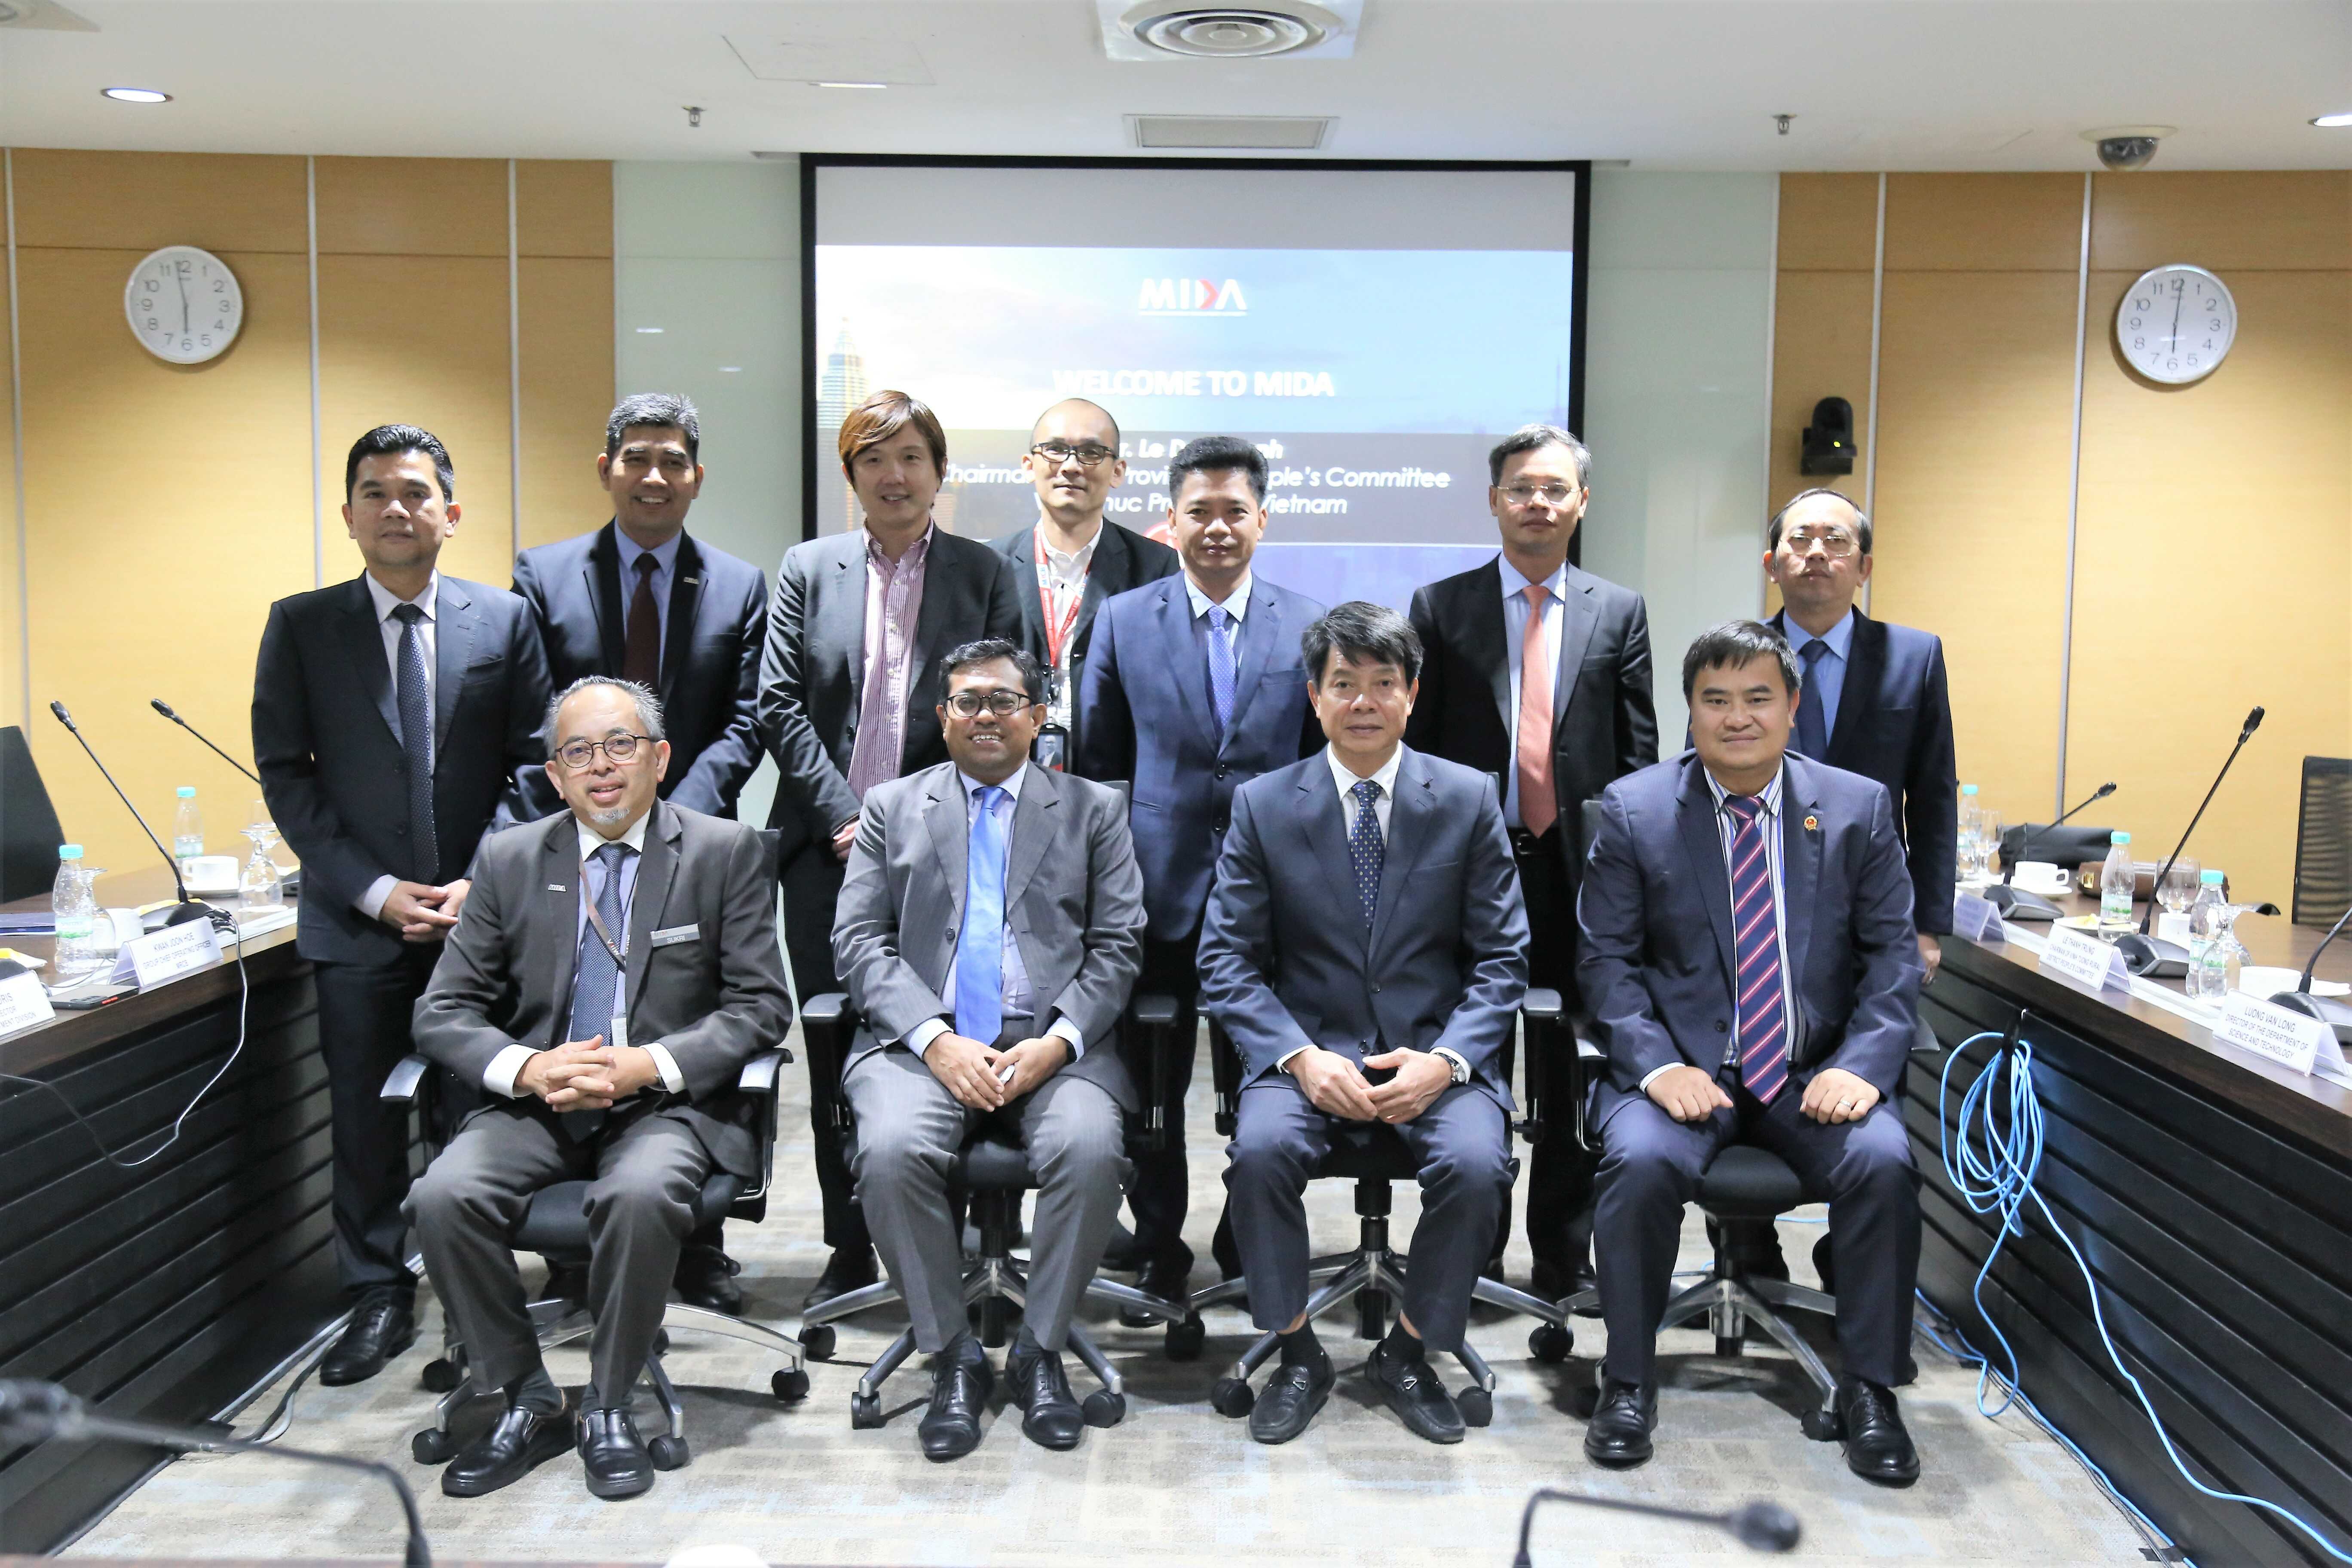 Đoàn công tác xúc tiến đầu tư, thương mại và du lịch tỉnh Vĩnh Phúc thăm và làm việc với cơ quan Phát triển đầu tư Malaysia – MIDA